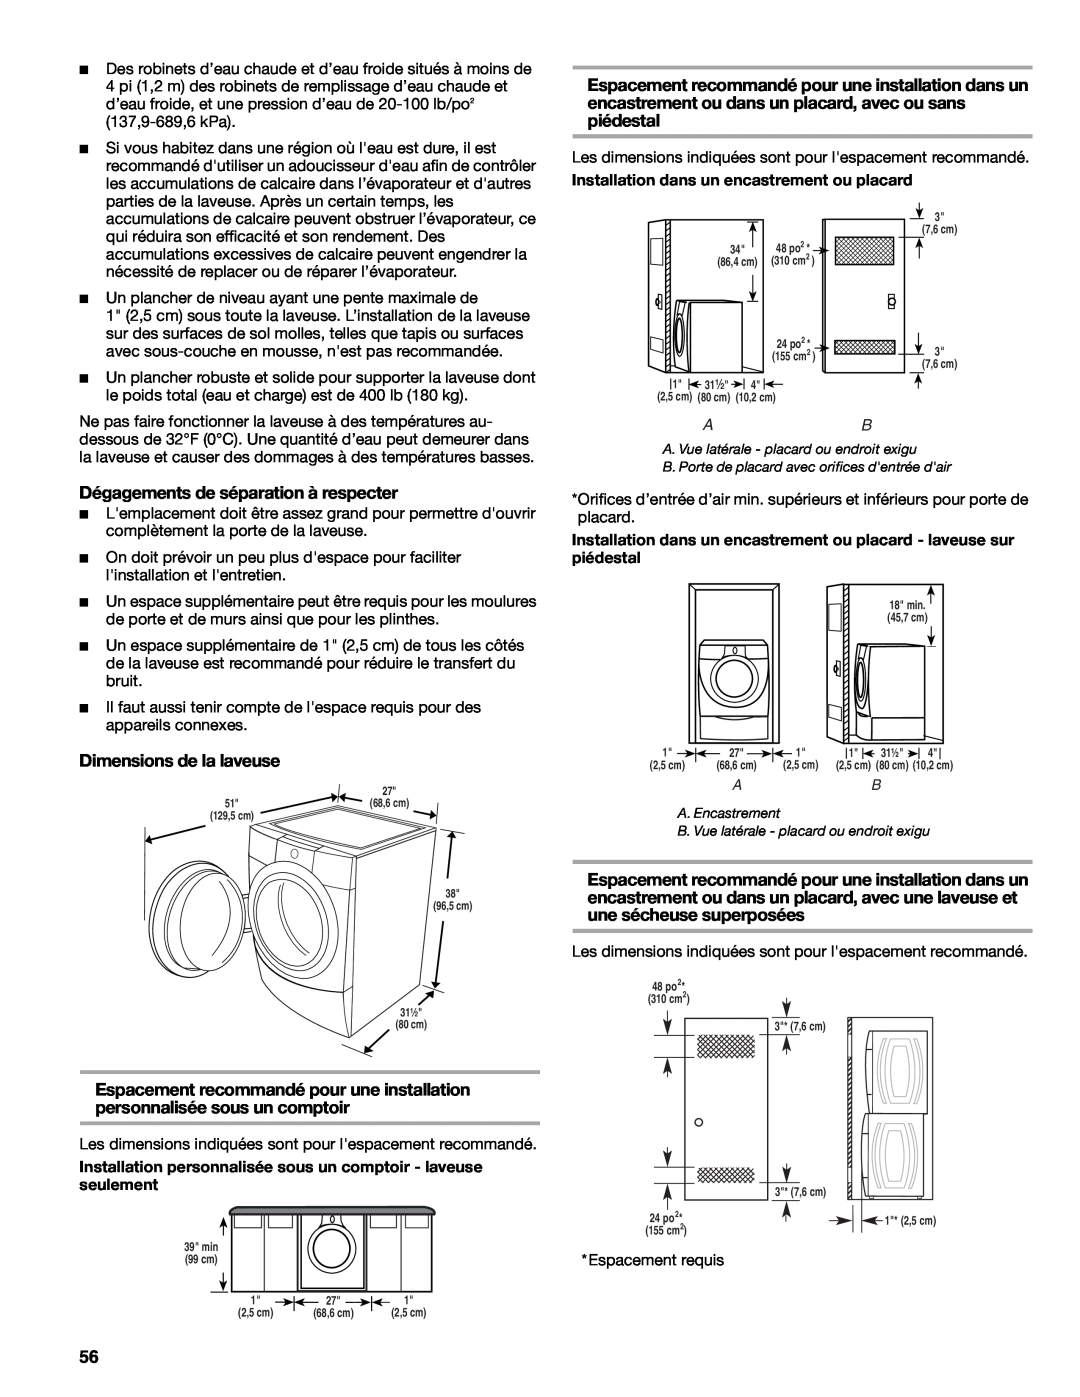 Kenmore W10133487A manual Dégagements de séparation à respecter, Dimensions de la laveuse 